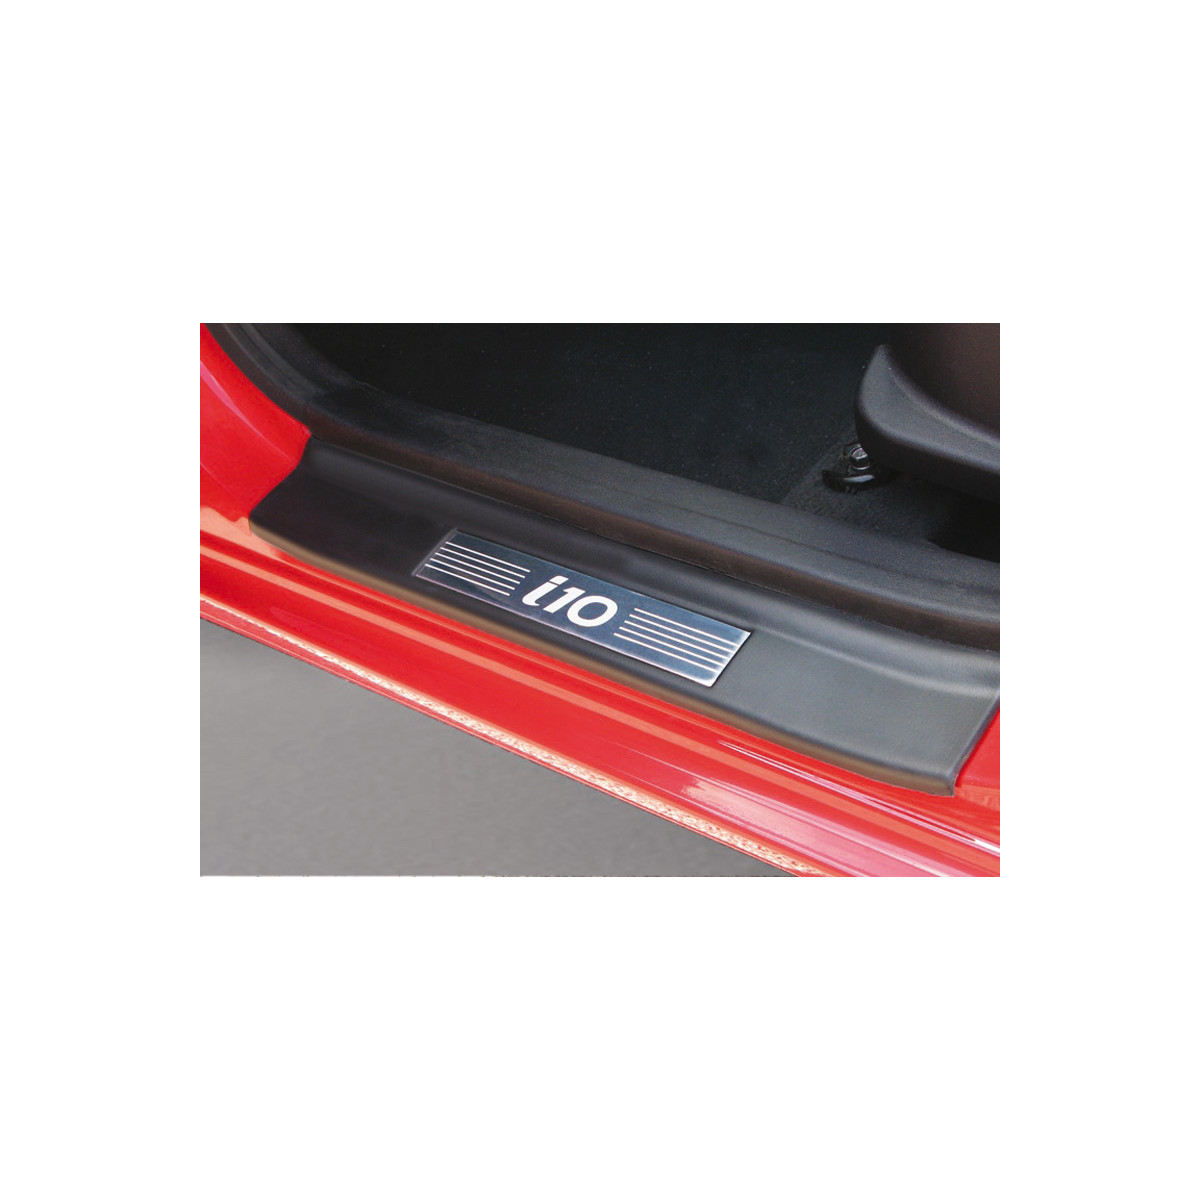 Einstiegsleisten, Hyundai i10, Farbe Schwarz mit Edelstahl-Einlage